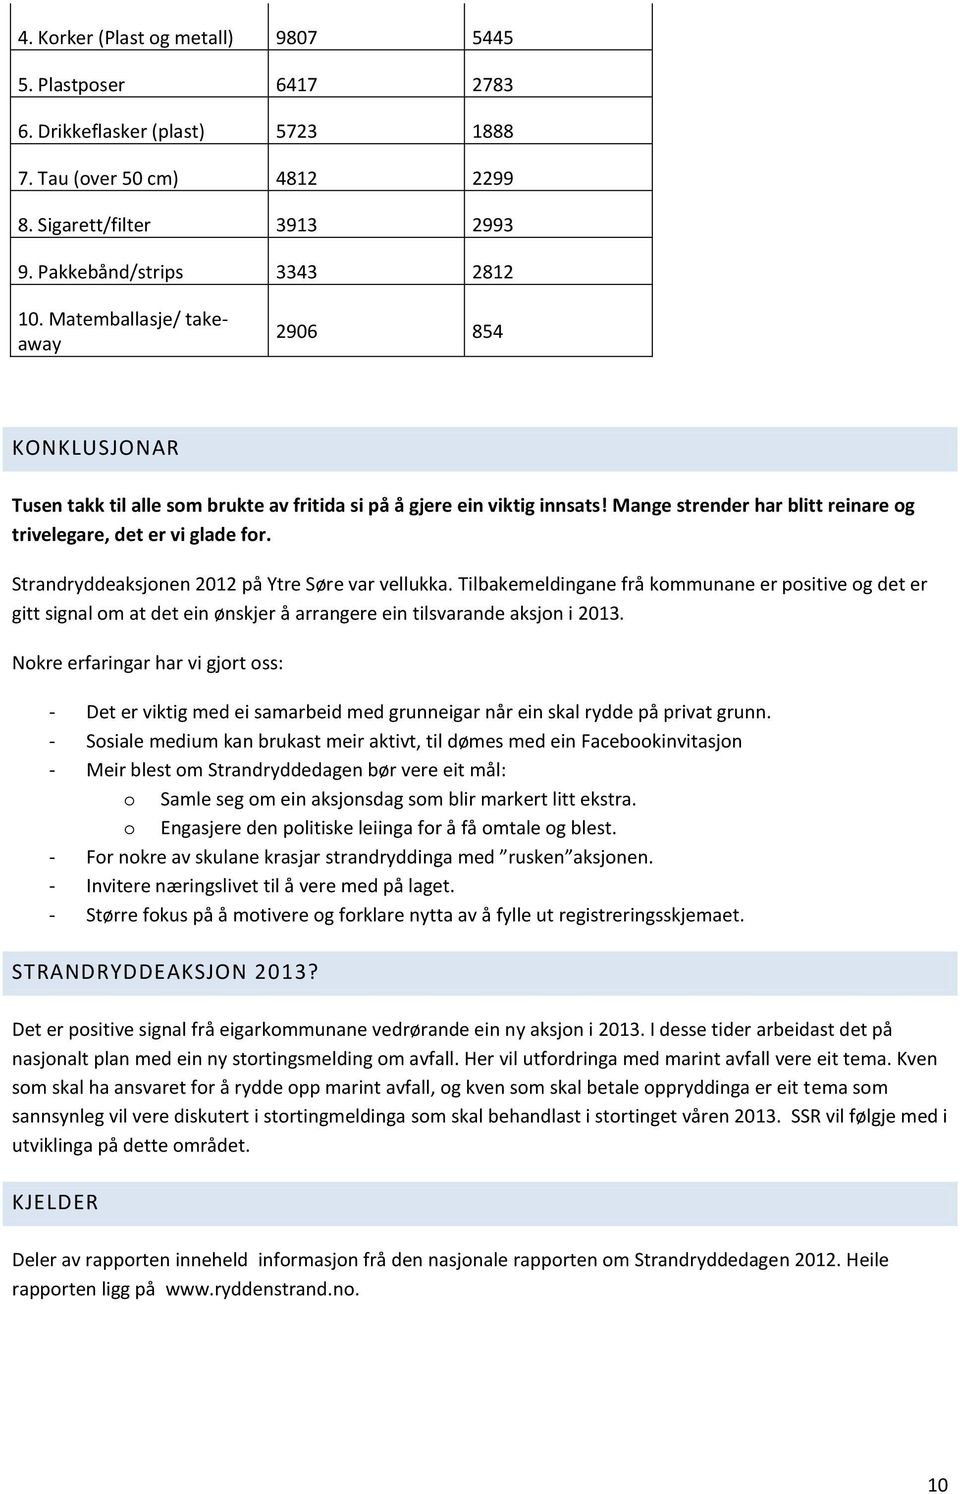 Strandryddeaksjonen 2012 på Ytre Søre var vellukka. Tilbakemeldingane frå kommunane er positive og det er gitt signal om at det ein ønskjer å arrangere ein tilsvarande aksjon i 2013.